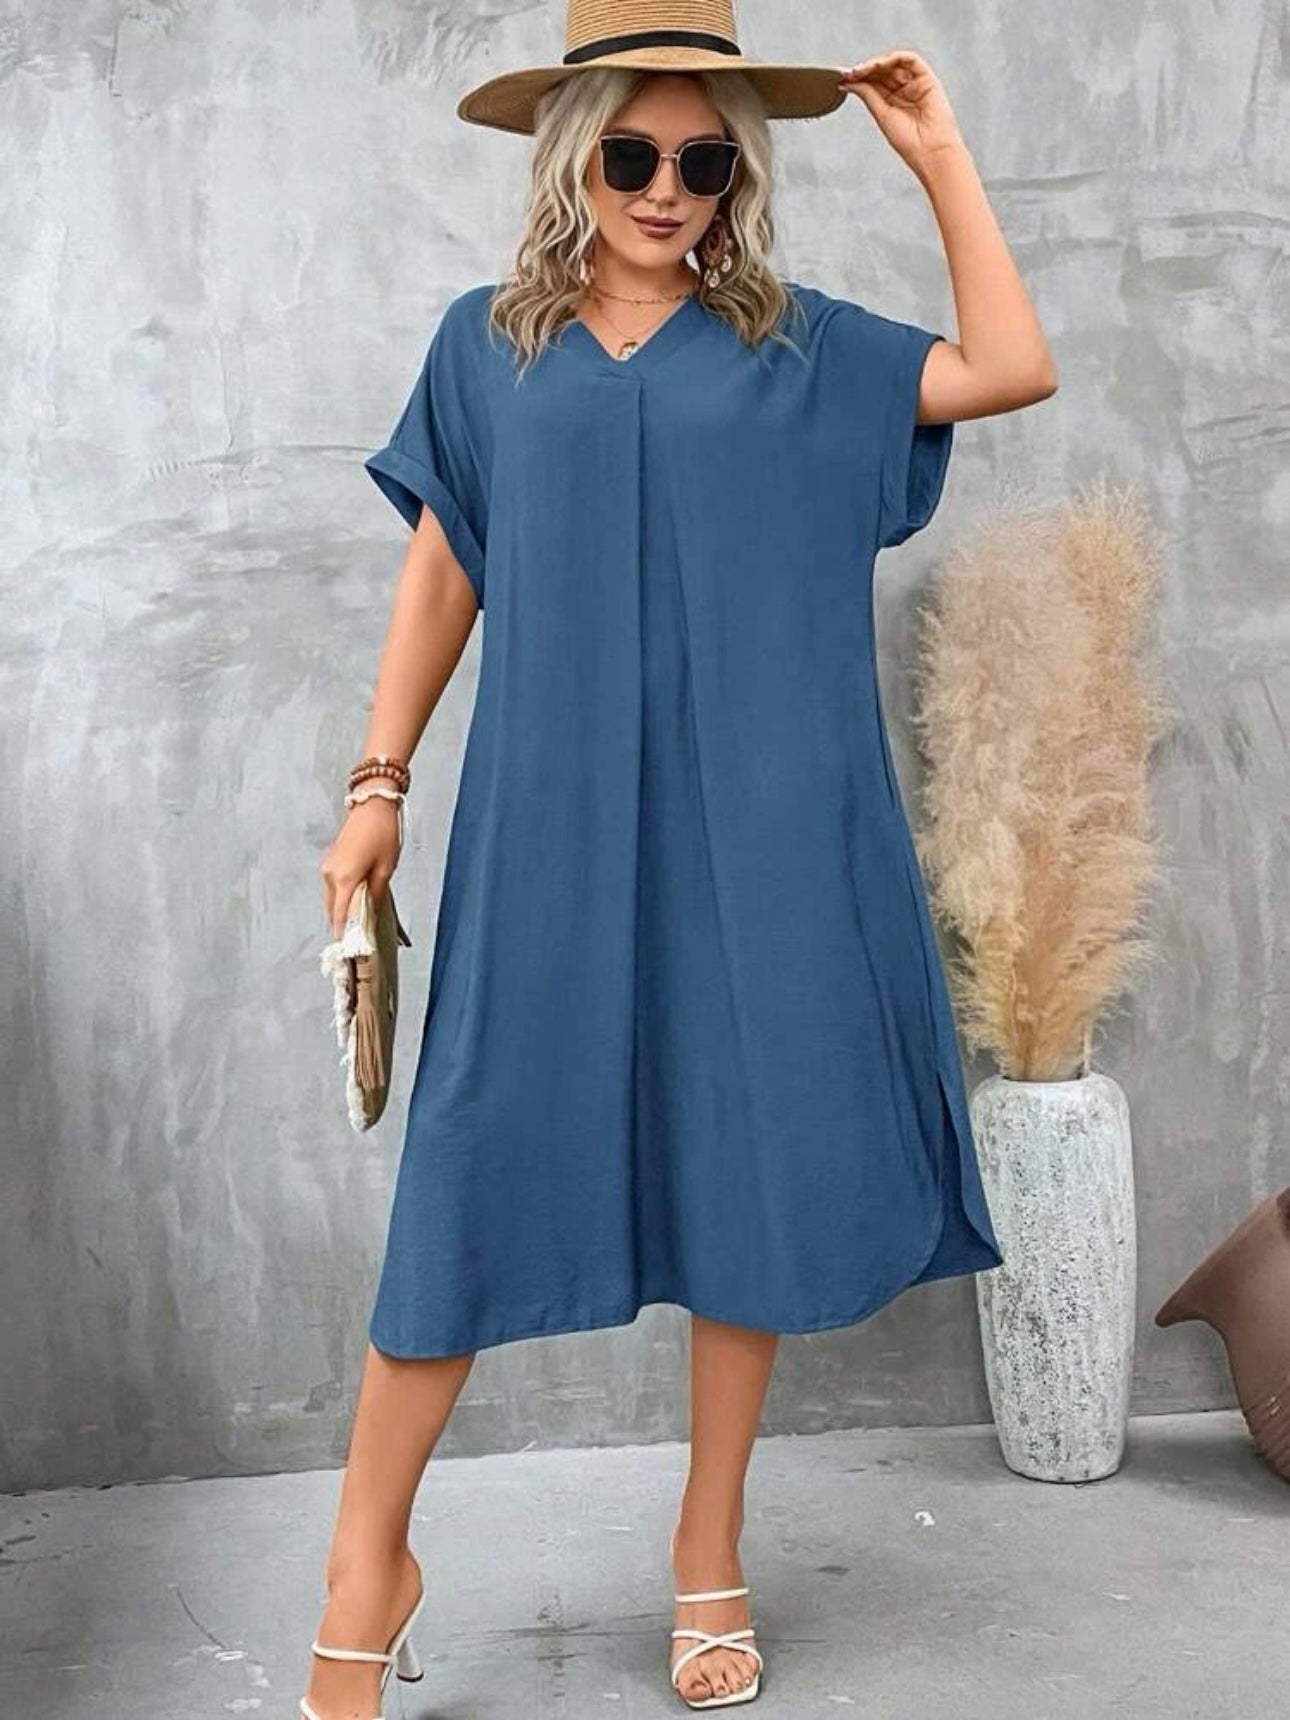 【L-3XL】 V-neck Fold-up Sleeve 2 Side Pocket Plus Size Dress